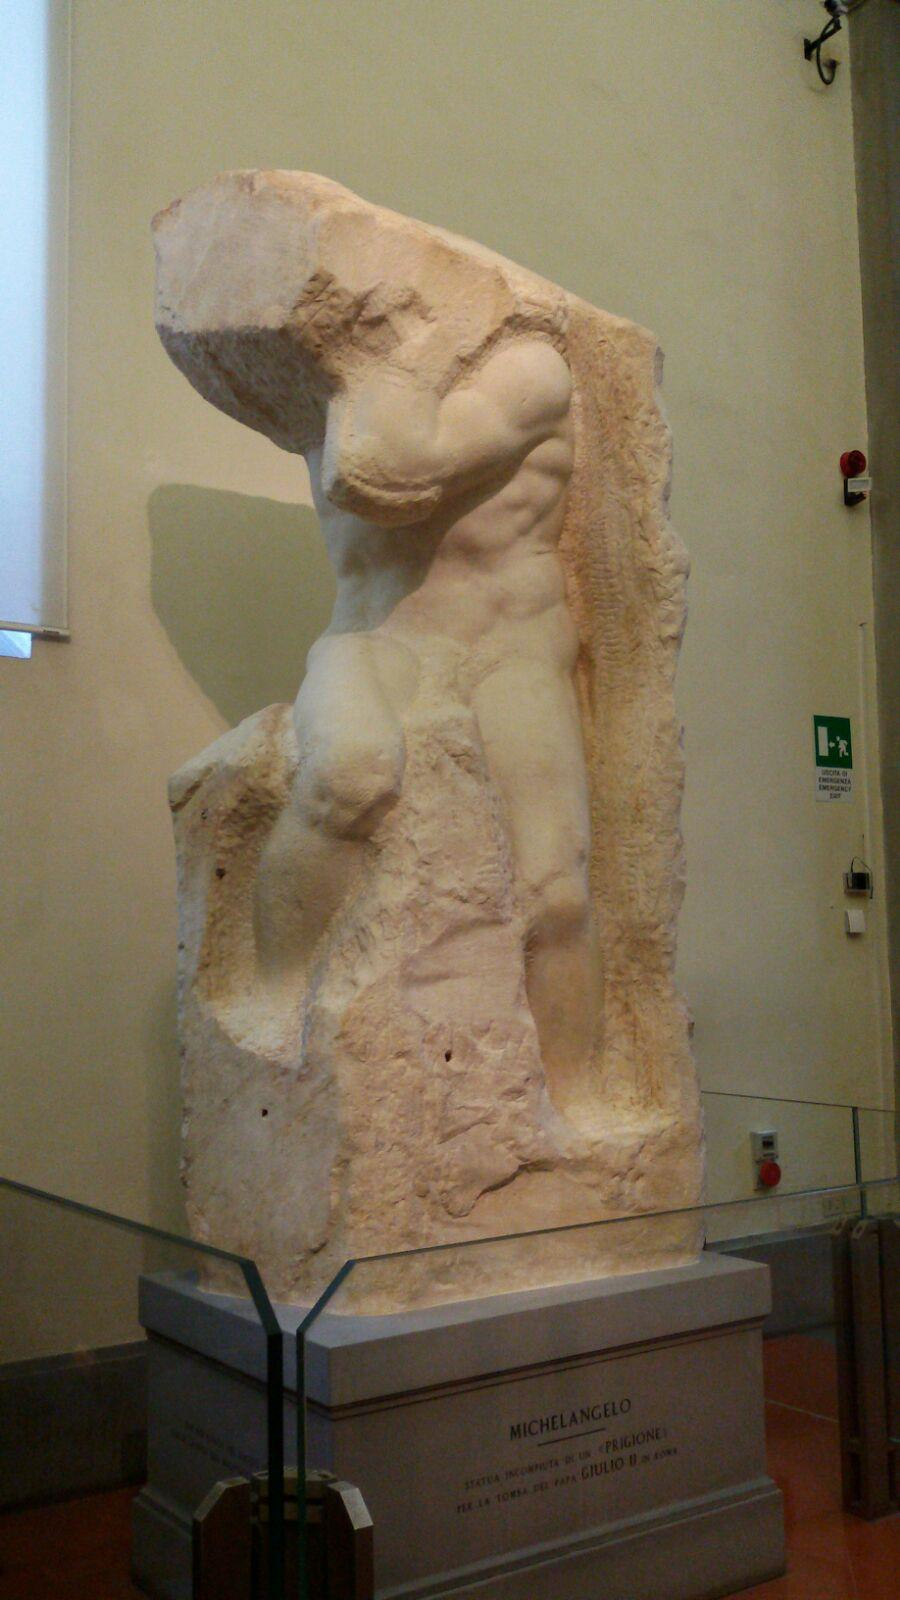 Proseguendo il tour fiorentino, alle Gallerie dell Accademia, una guida molto professionale, ci ha condotti alla volta delle maggiori opere del museo: dall immenso David di Michelangelo ai folgoranti